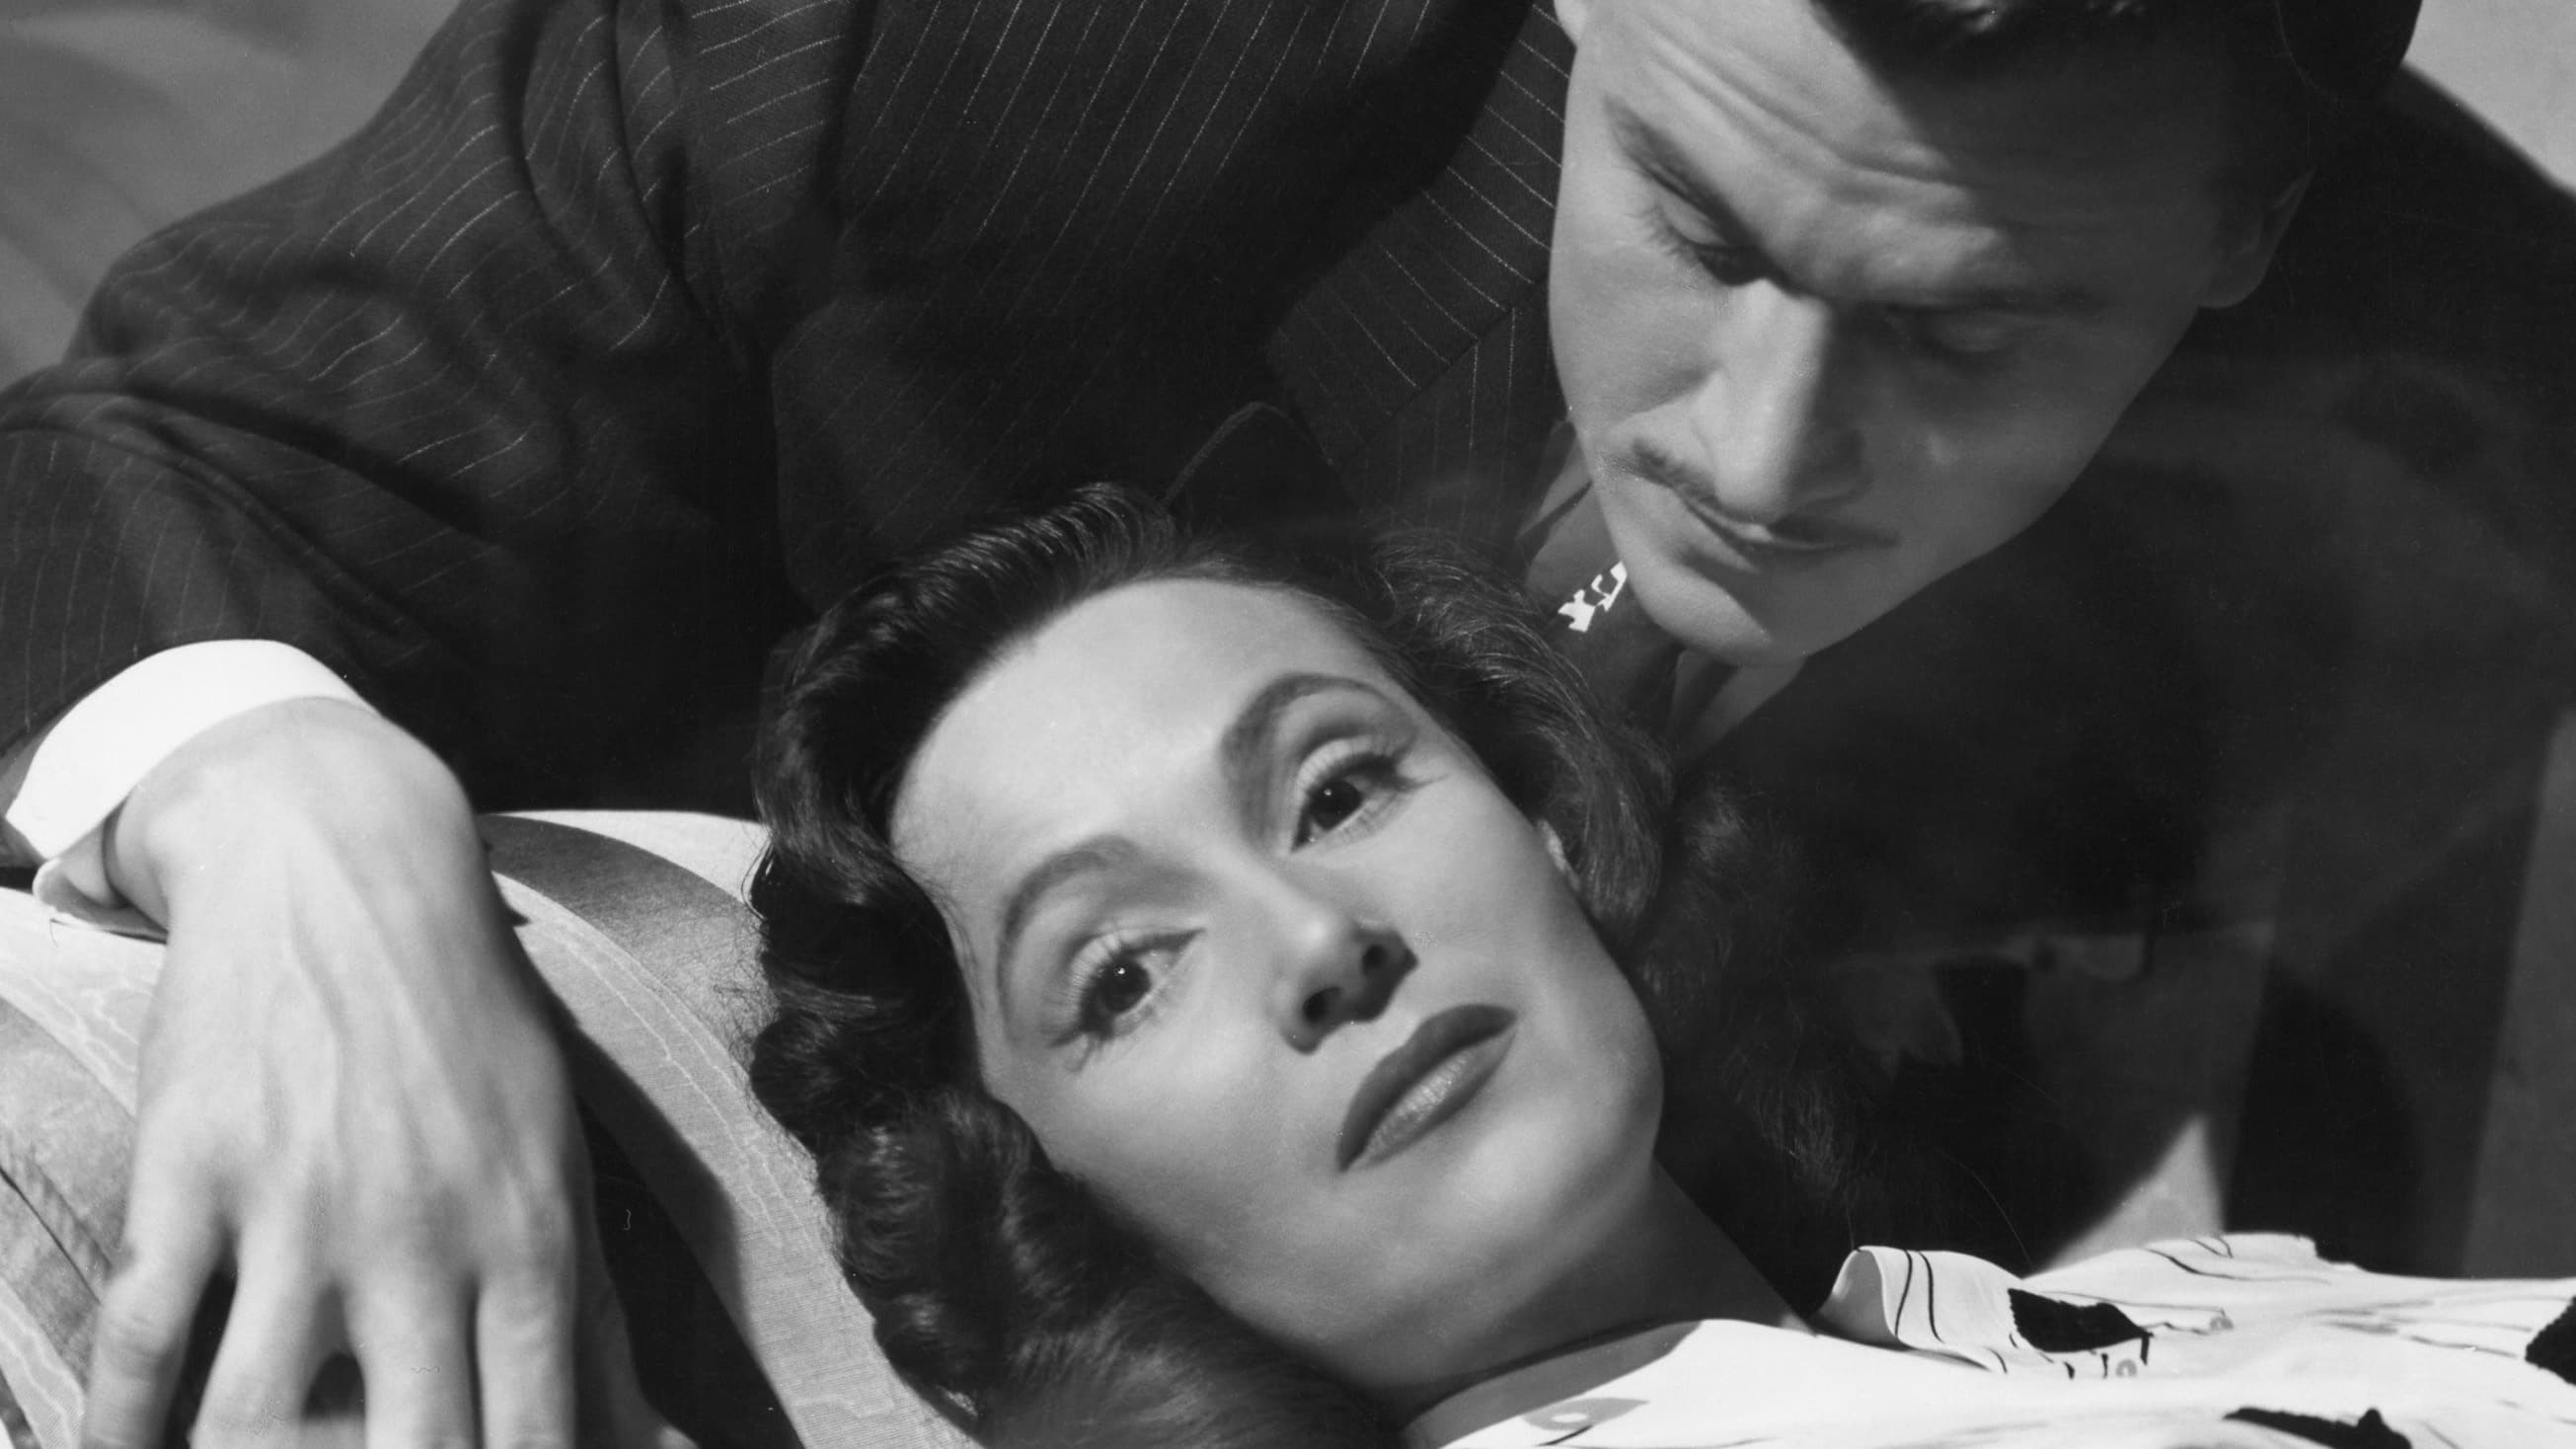 La otra (1946)